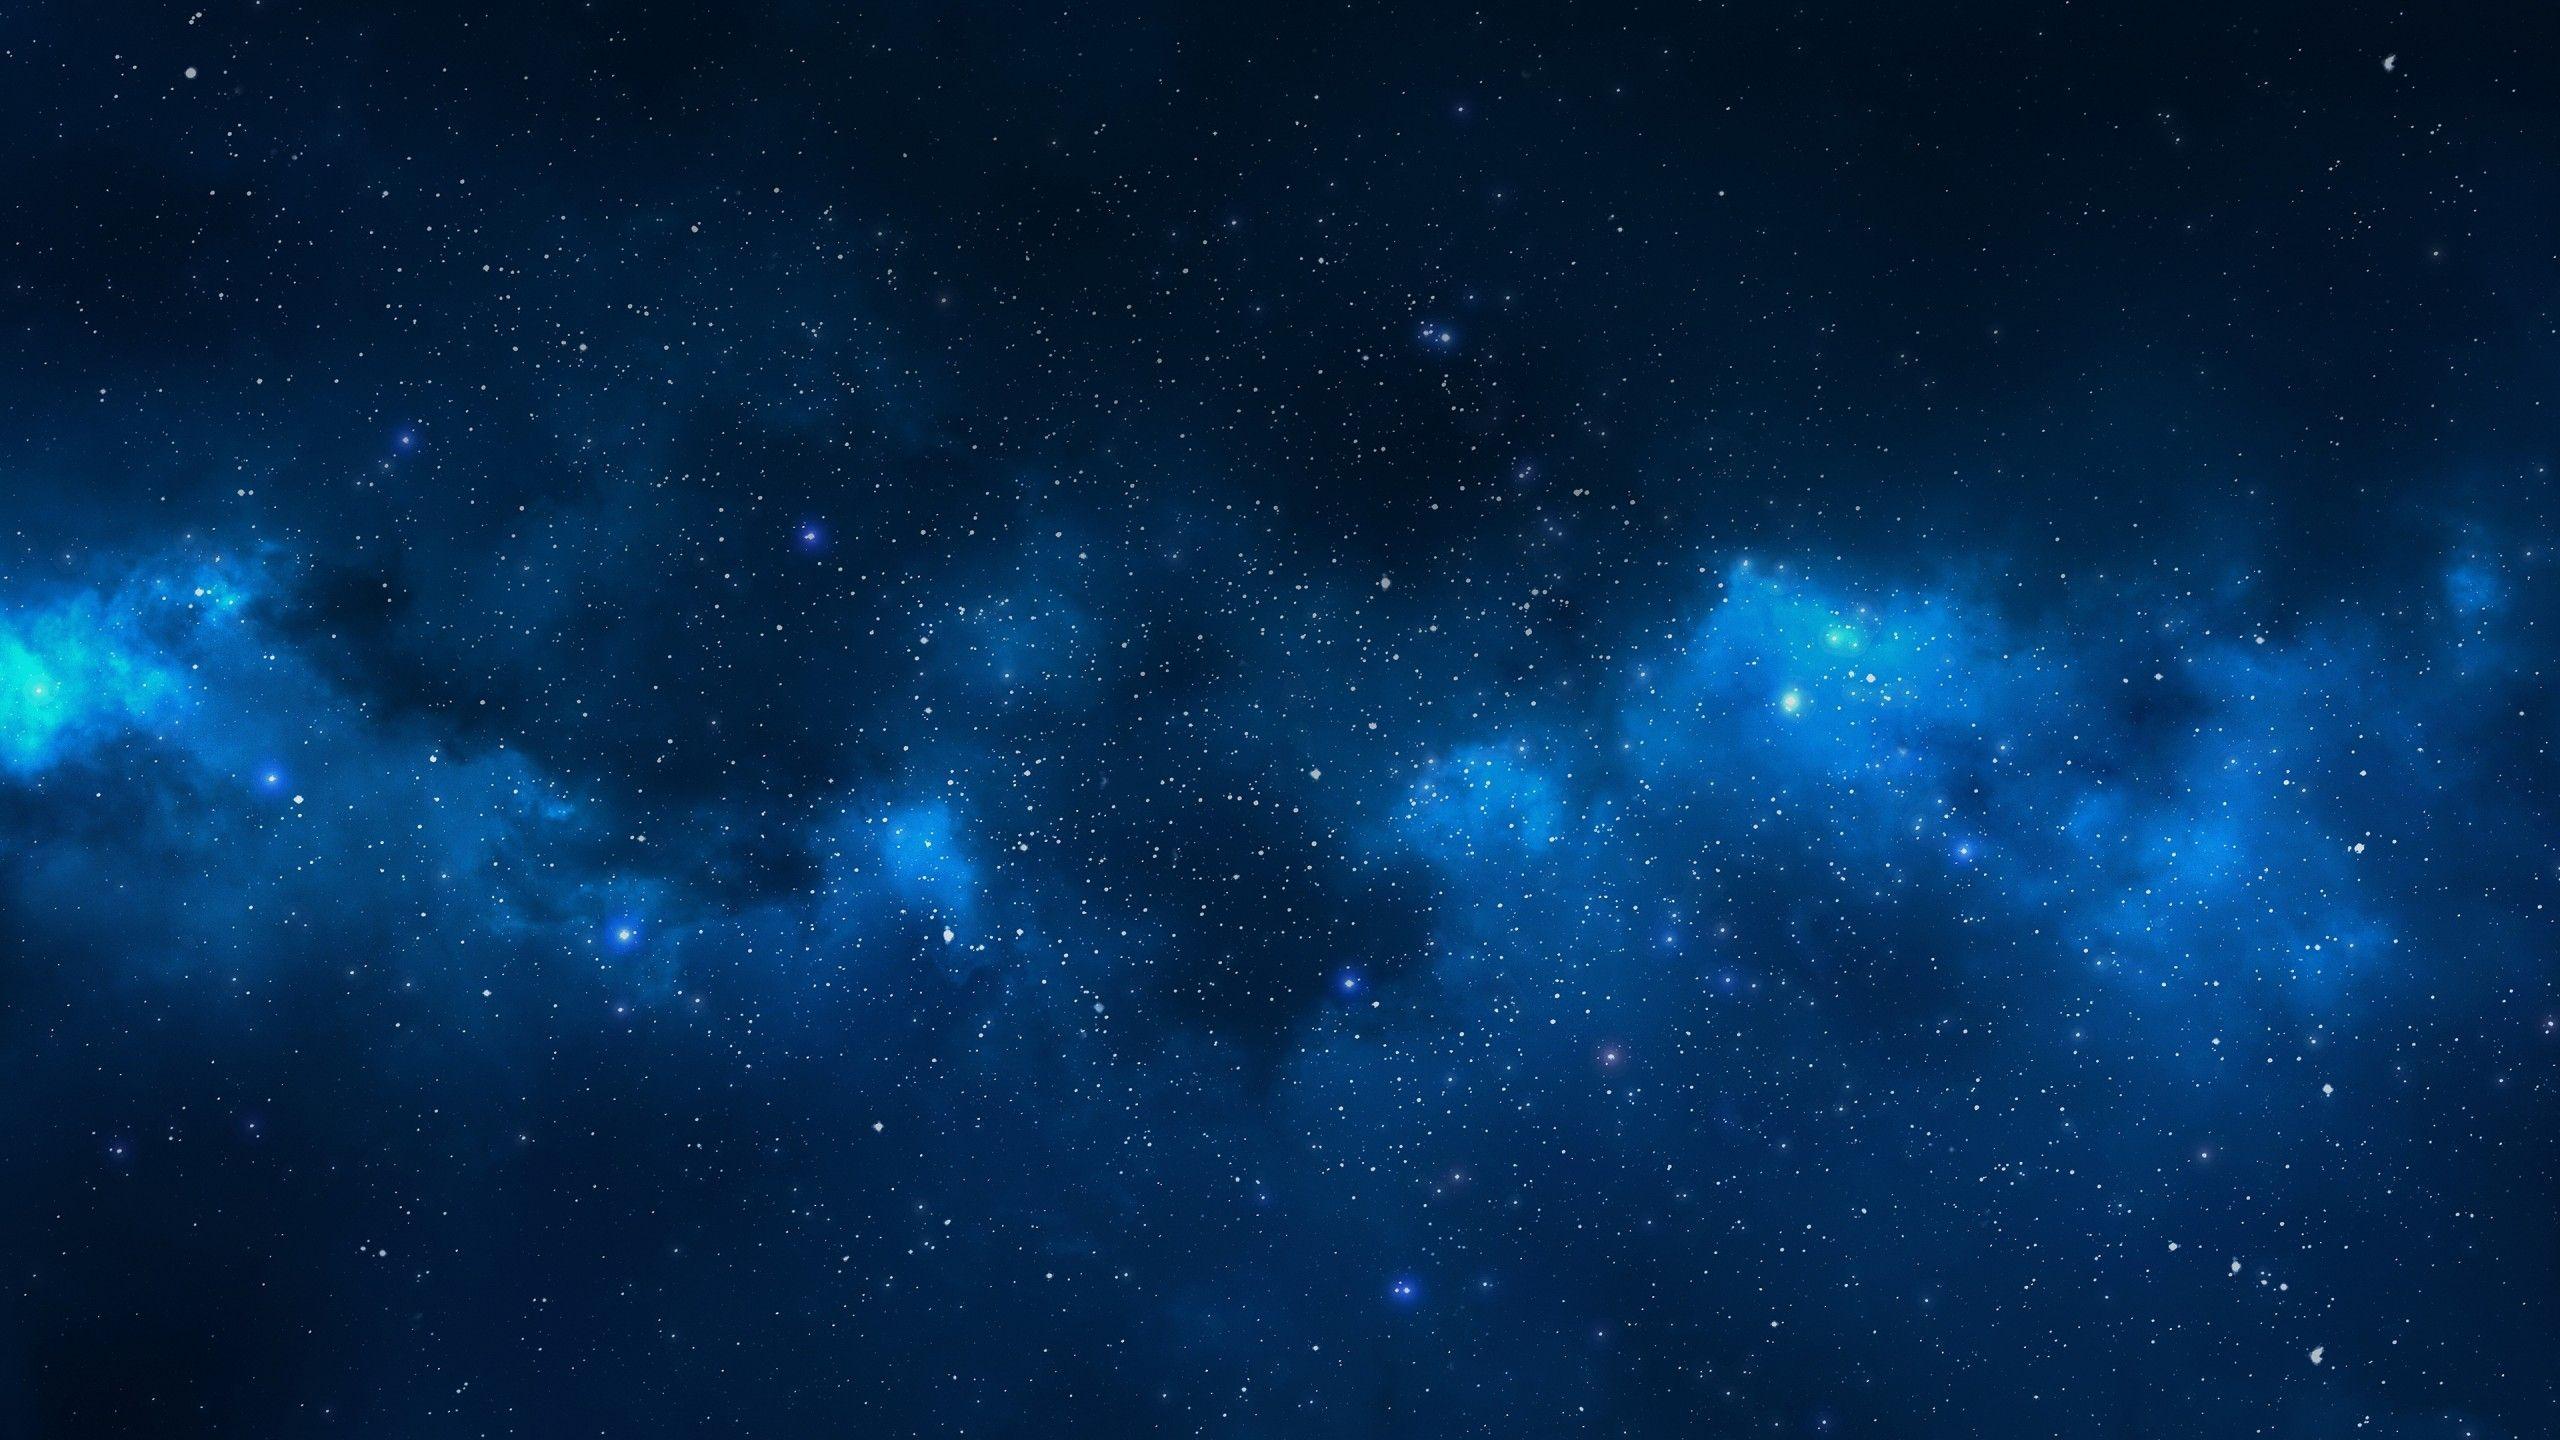 Cùng chiêm ngưỡng những hình ảnh đồ họa máy tính thiên hà xanh tuyệt đẹp, khiến bạn như đang đắm chìm trong vũ trụ rộng lớn. Những bức ảnh này chắc chắn sẽ khiến bạn hài lòng vì tính độc đáo và sống động của chúng. Truy cập ngay để khám phá nhé!